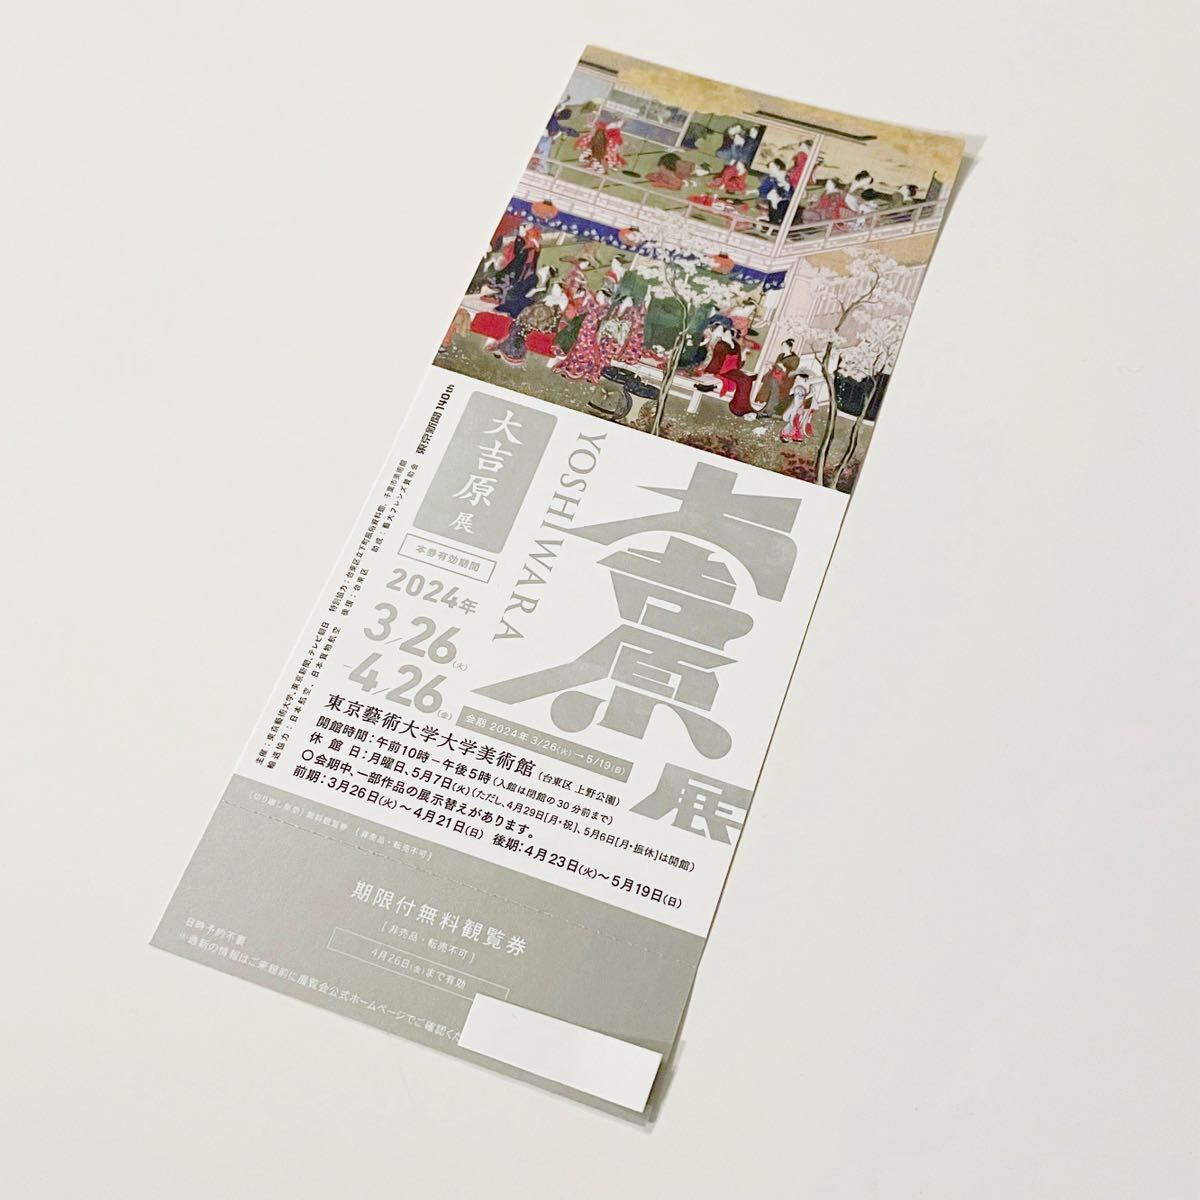 大吉原展 東京藝術大学大学美術館 期限付無料観覧券 チケットの画像1